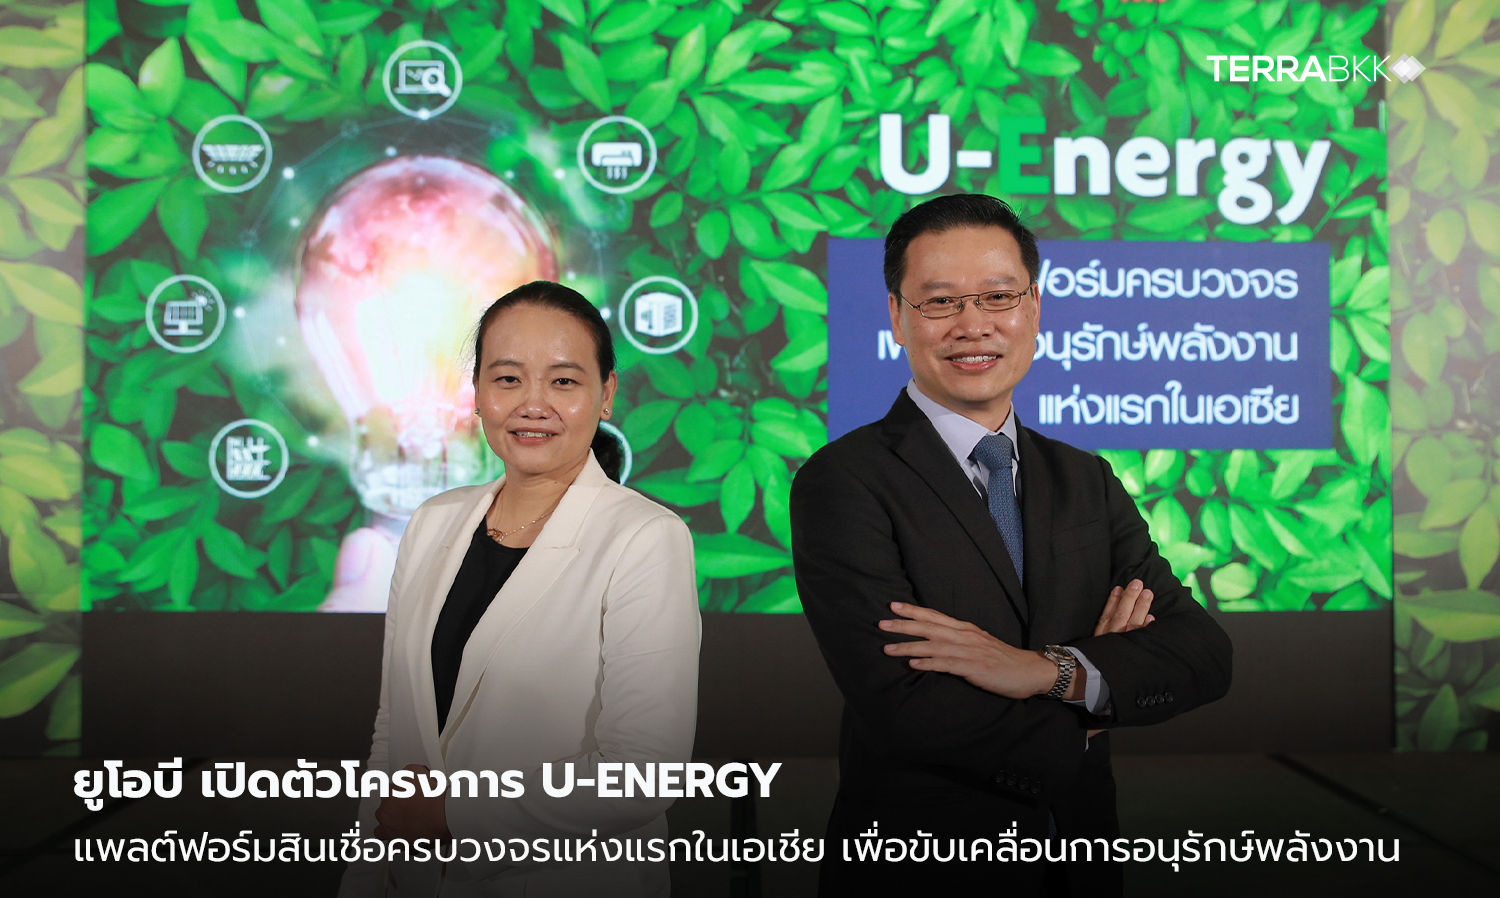 ยูโอบี เปิดตัวโครงการ U-Energy แพลต์ฟอร์มสินเชื่อครบวงจรแห่งแรกในเอเชีย  เพื่อขับเคลื่อนการอนุรักษ์พลังงาน